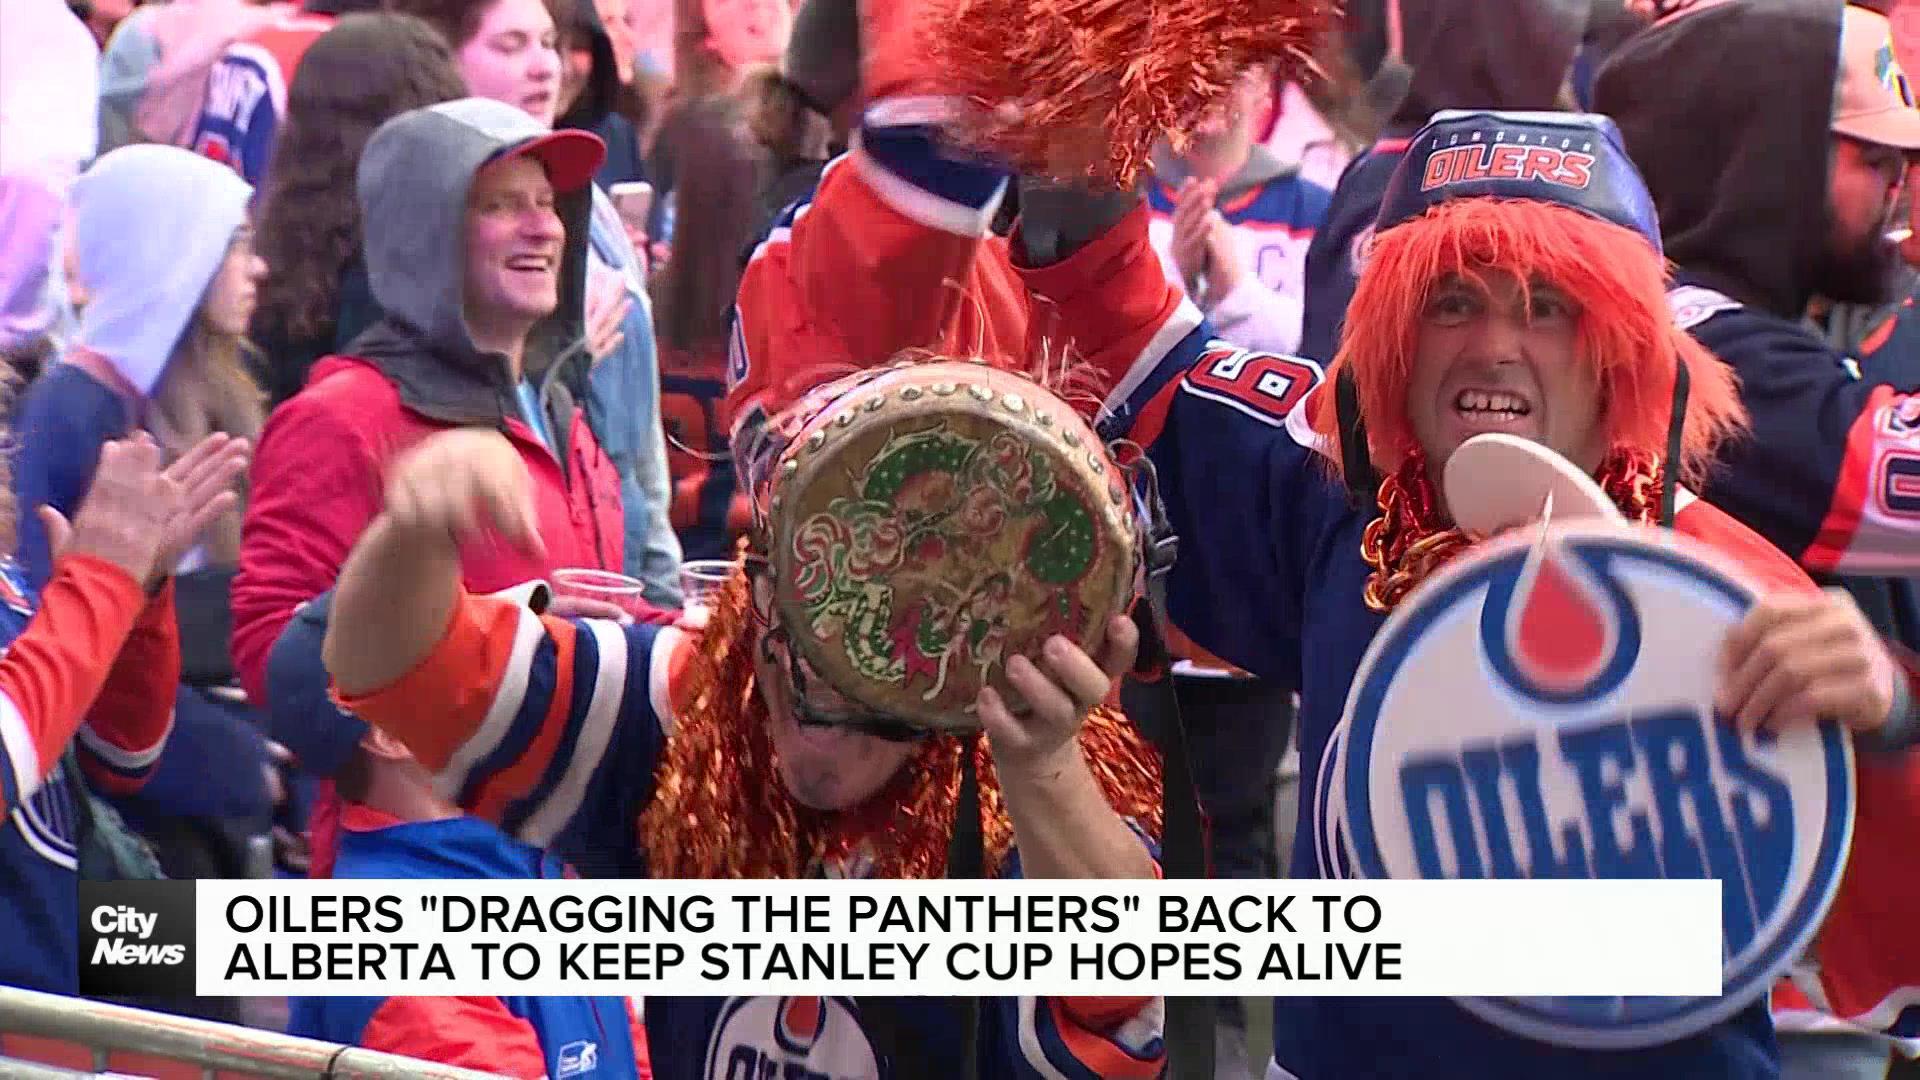 Edmonton Oilers "dragging" Florida Panthers back to Alberta